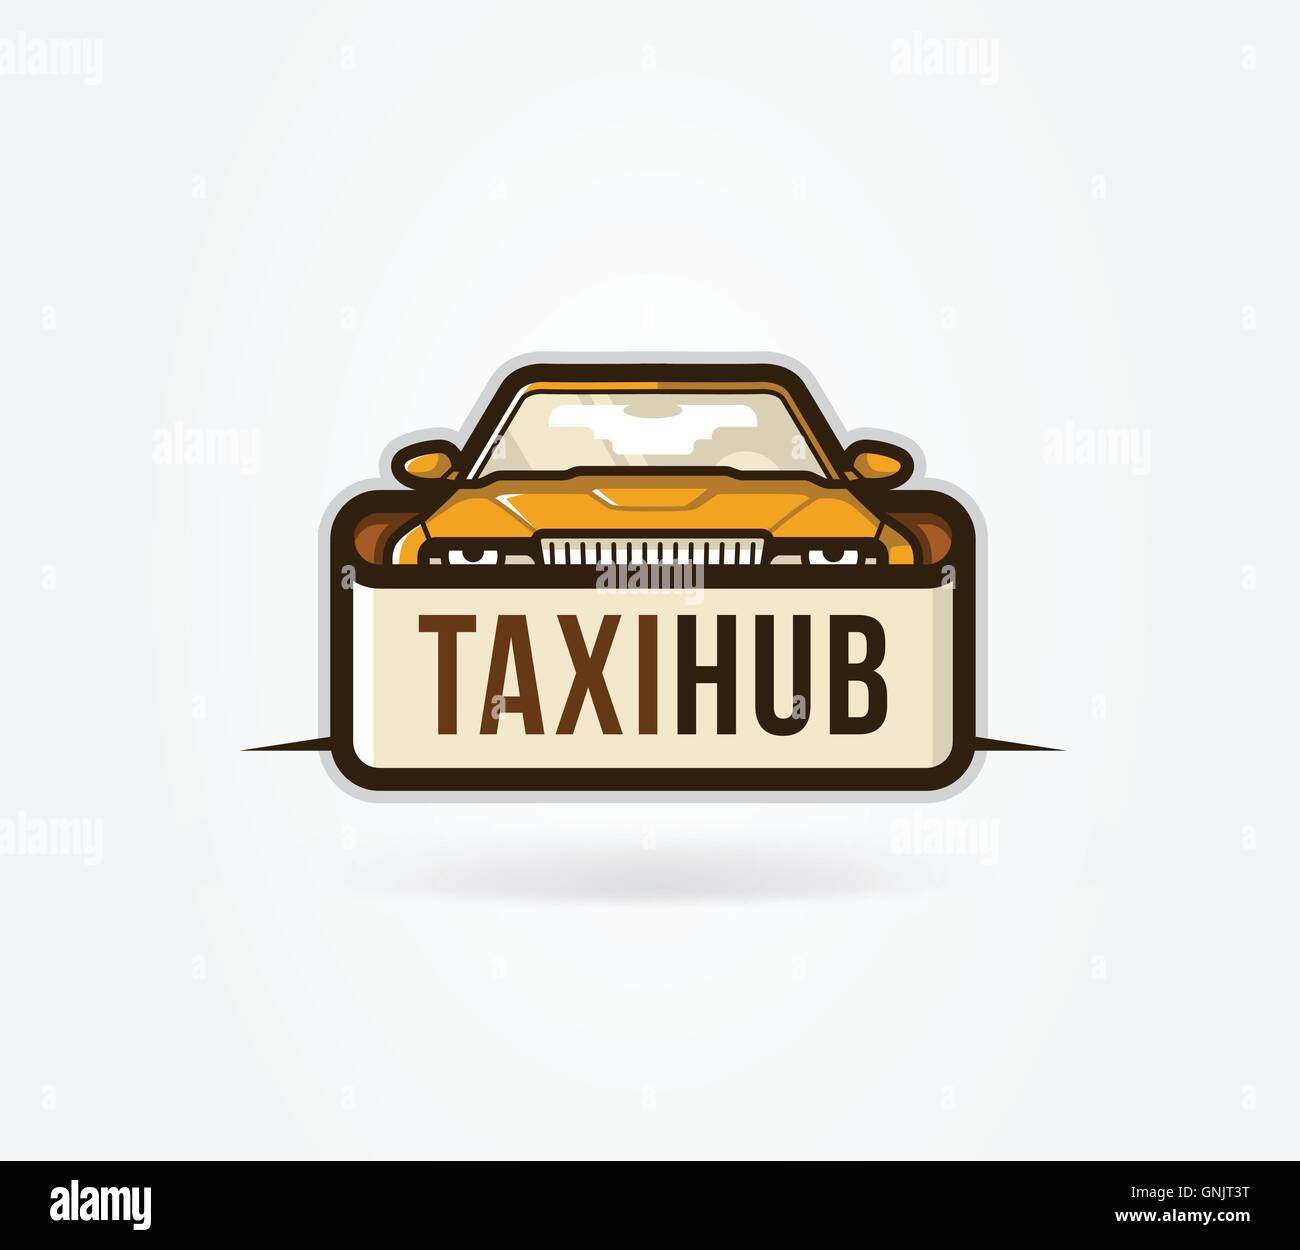 Taxi Hub icon Stock Vector